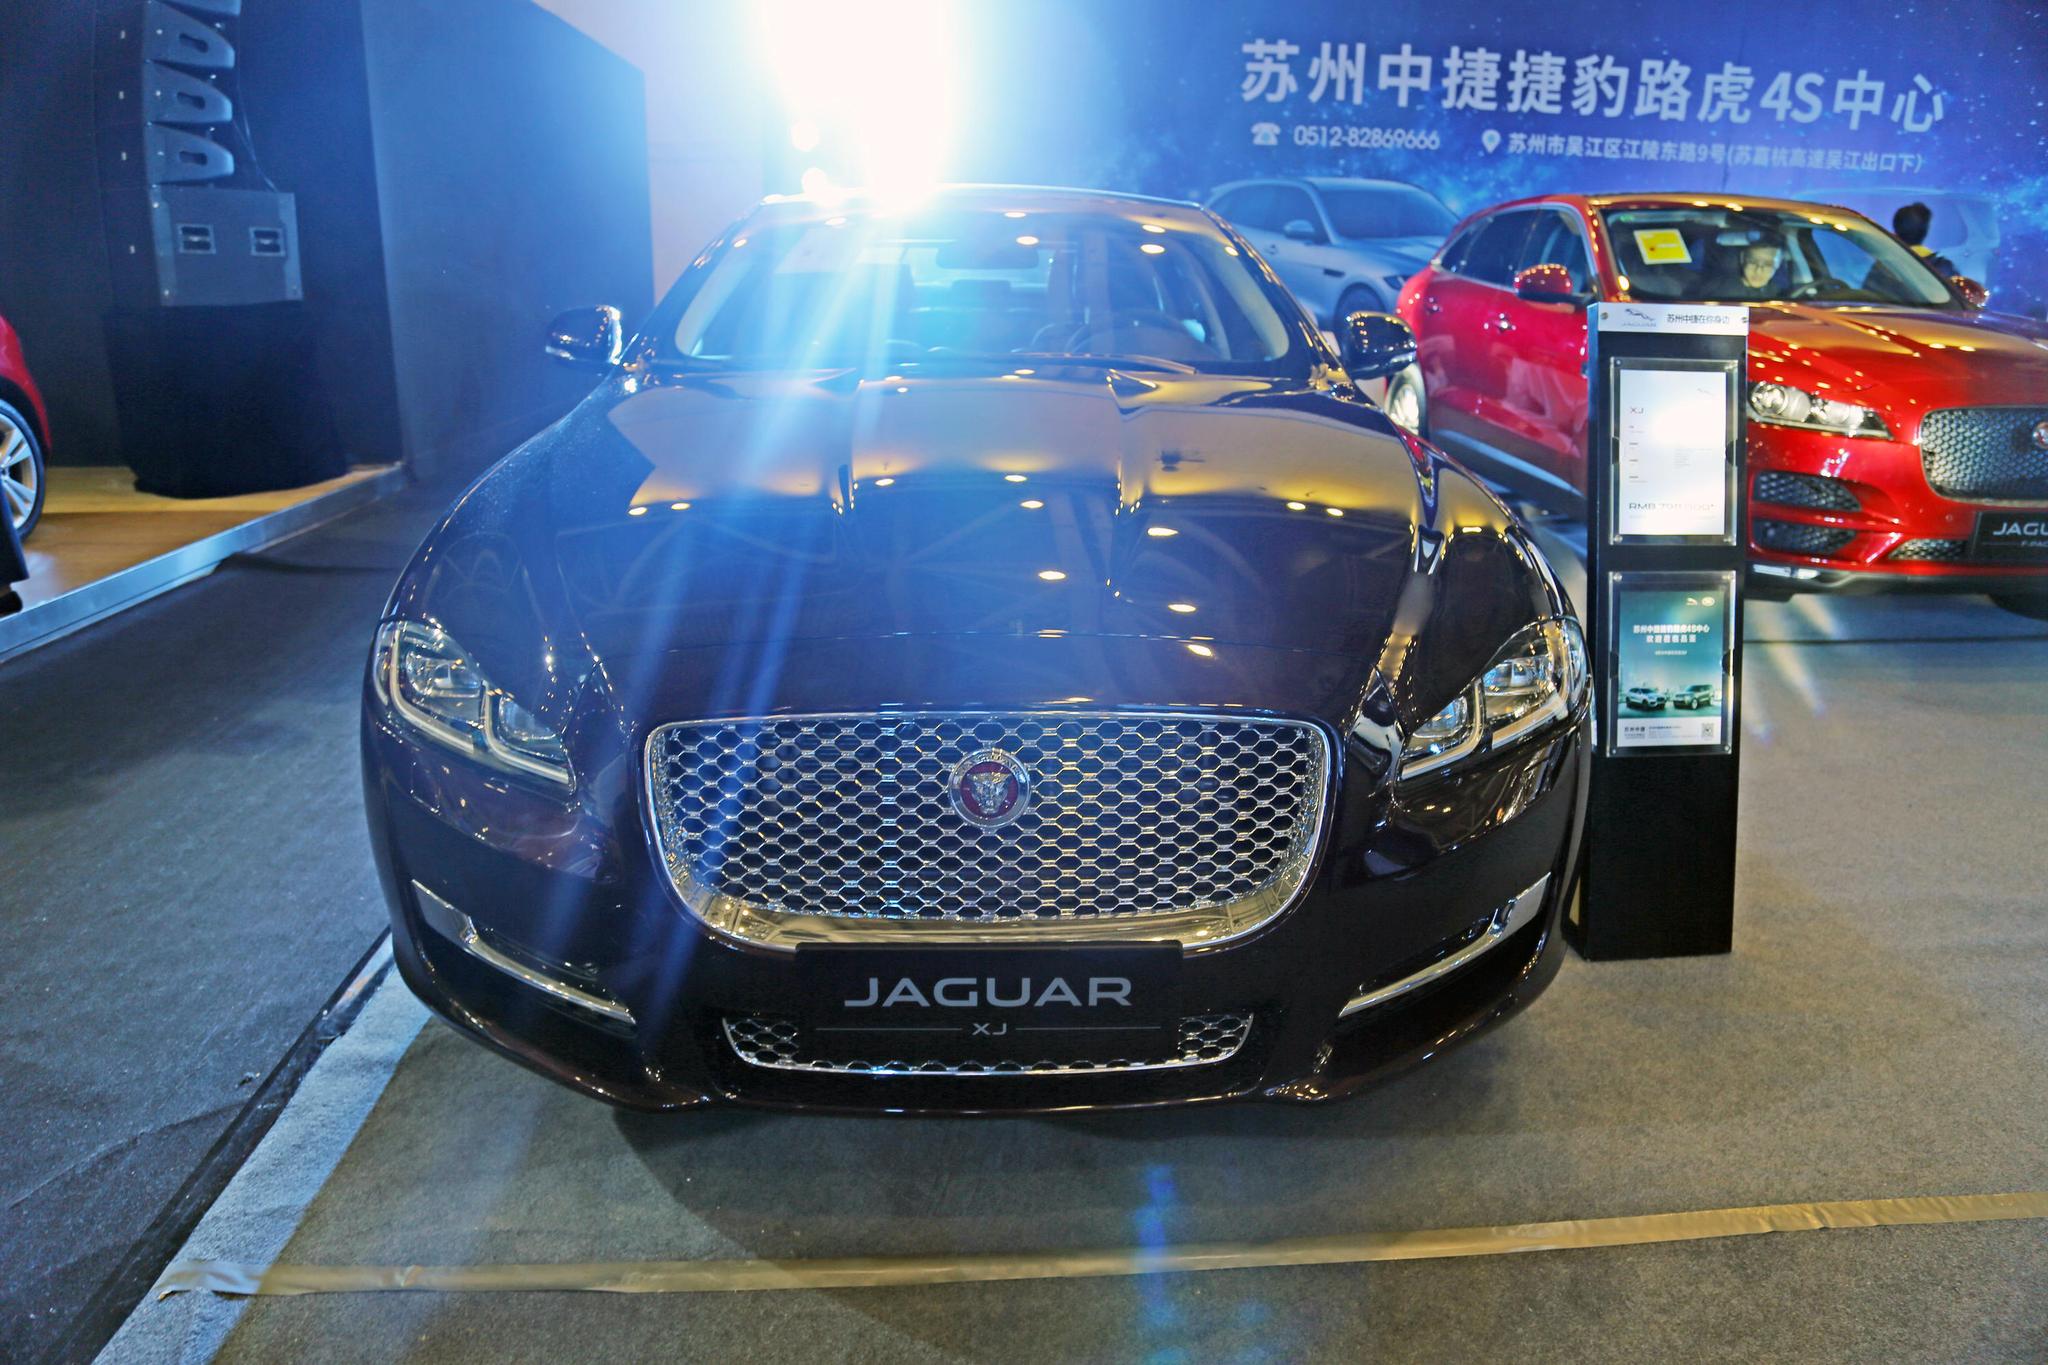 捷豹jaguar xj,百万级别奢华座驾,车展实拍!